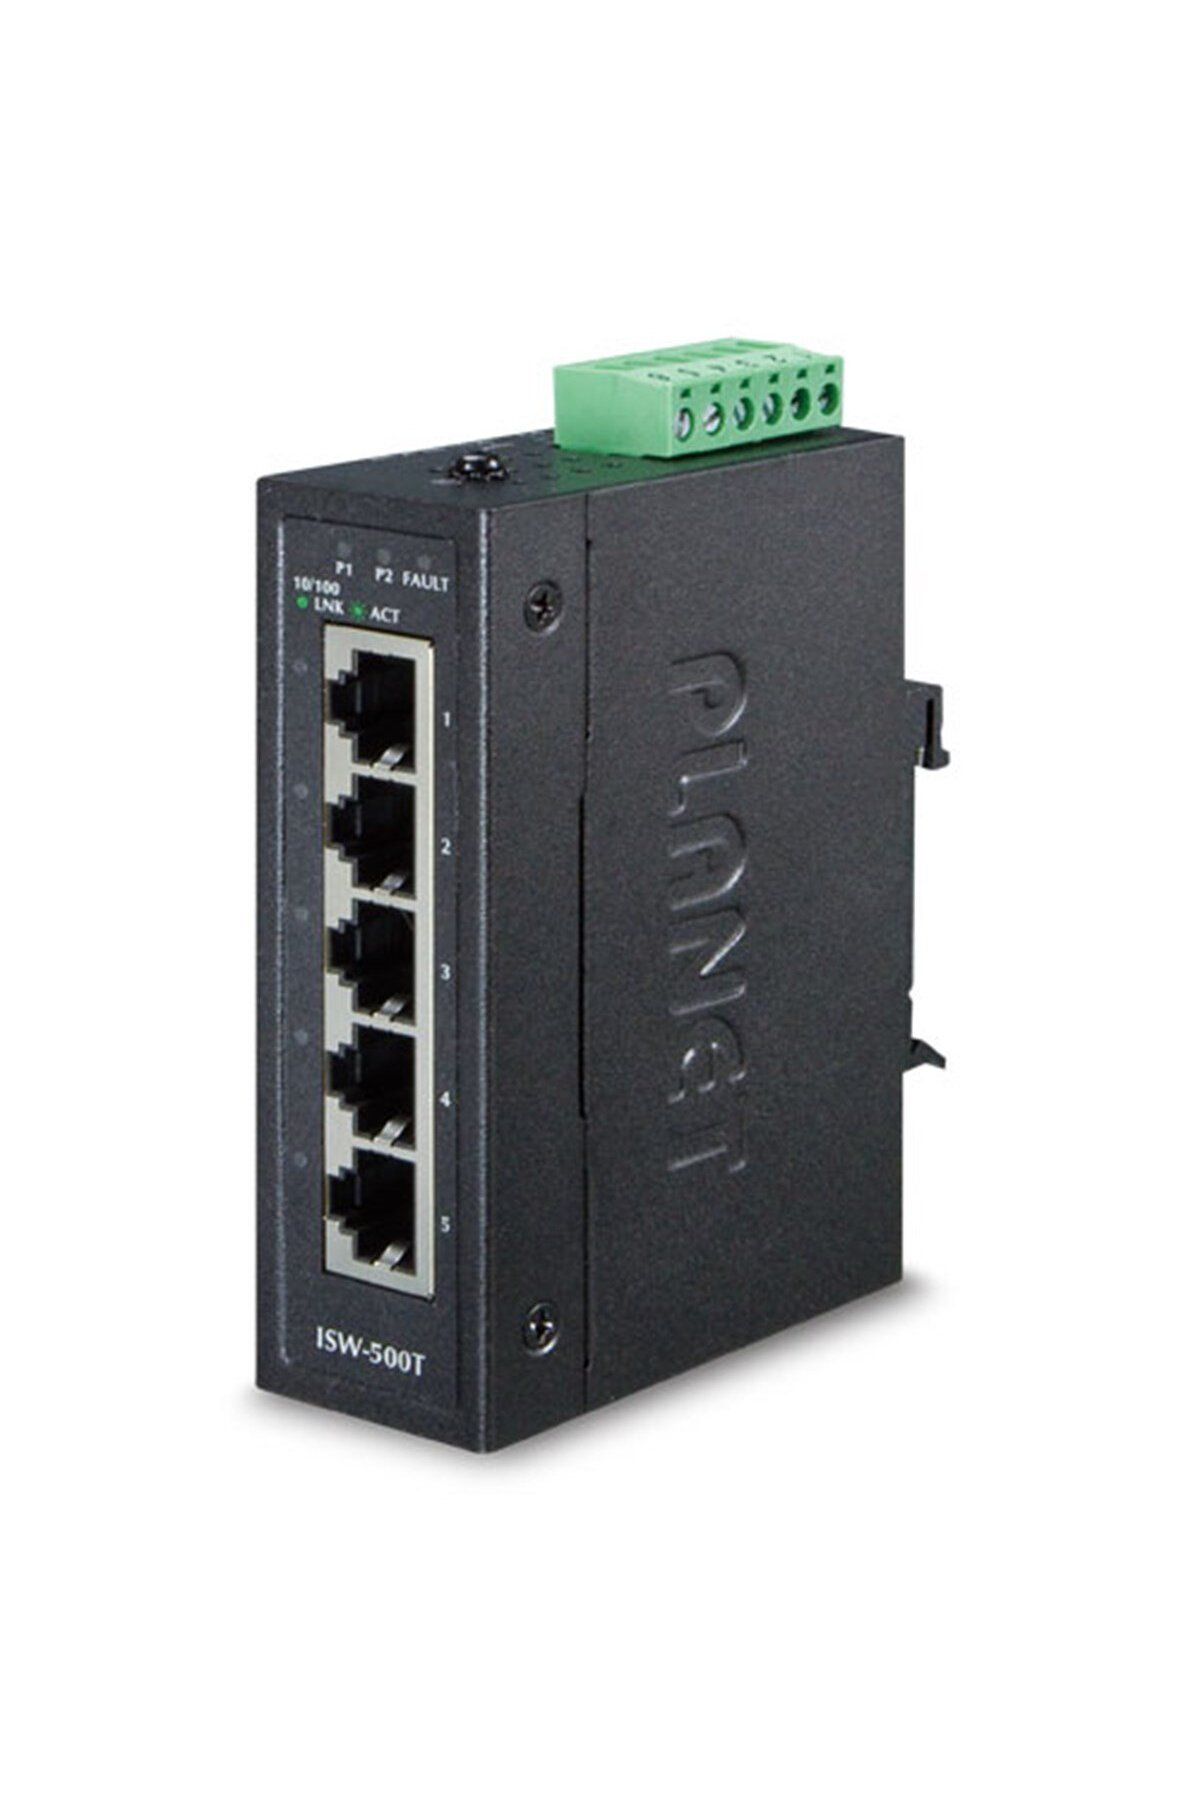 Planet Endüstriyel Tip Ethernet Switch (INDUSTRİAL ETHERNET SWİTCH)
5-port 10/100base-tx Rj-45 Port Ip30,